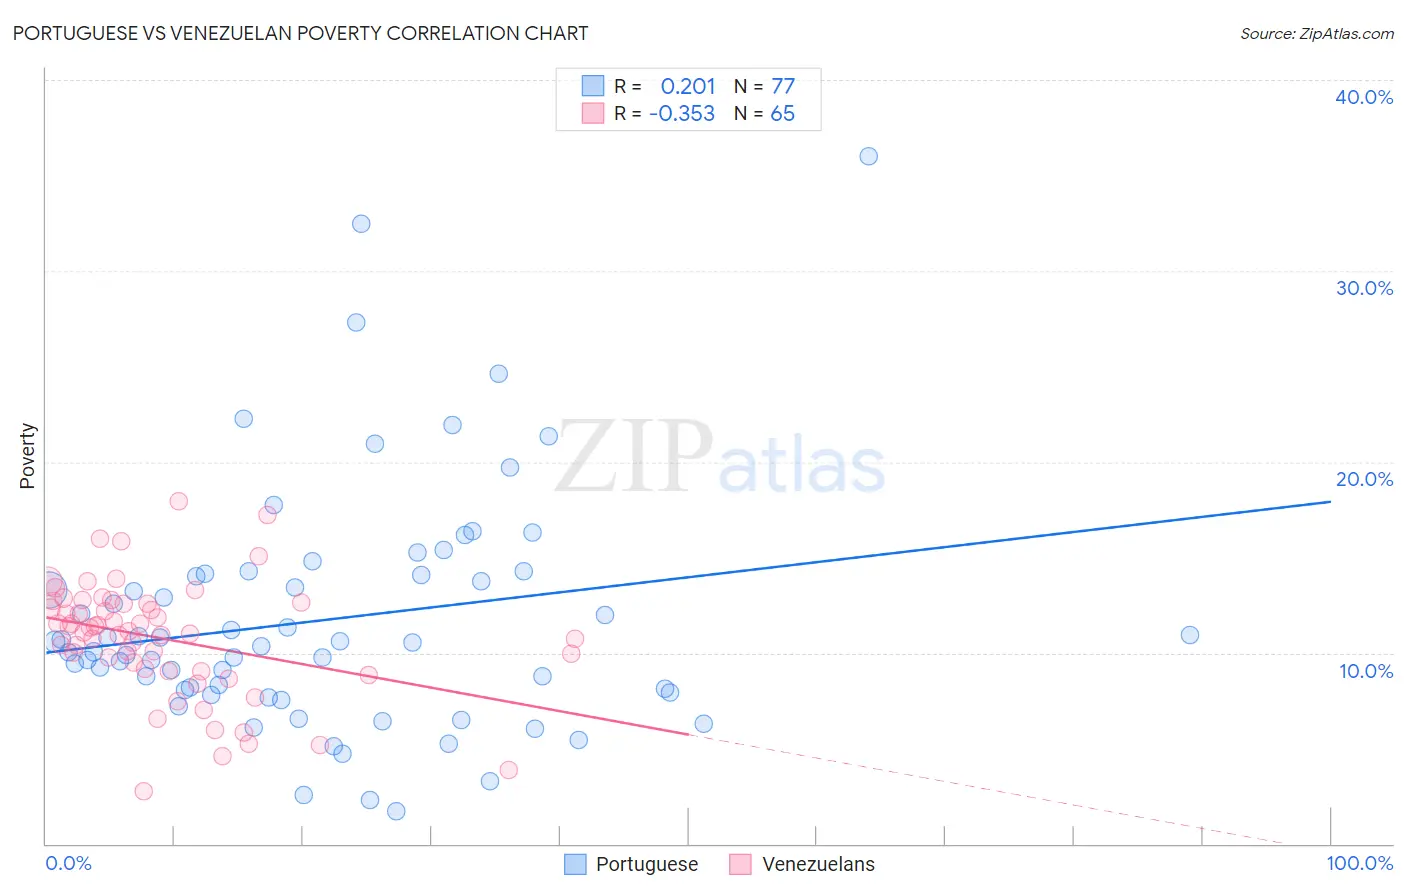 Portuguese vs Venezuelan Poverty